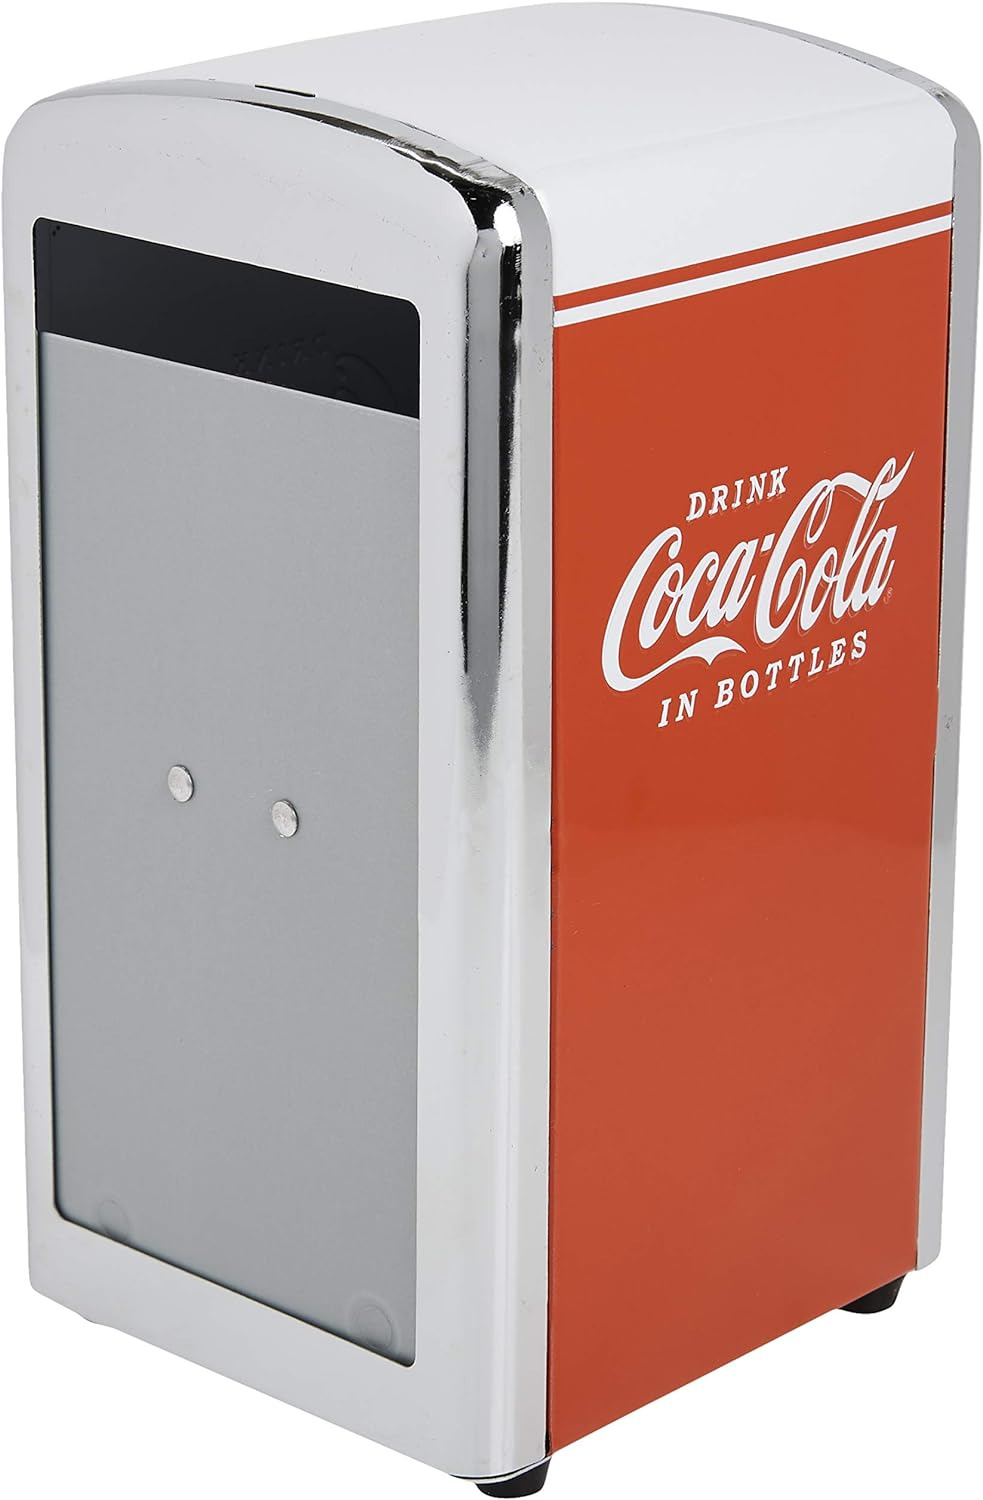 Coca-Cola CC342 Drink Coca-Cola Napkin Dispenser,Red,Small